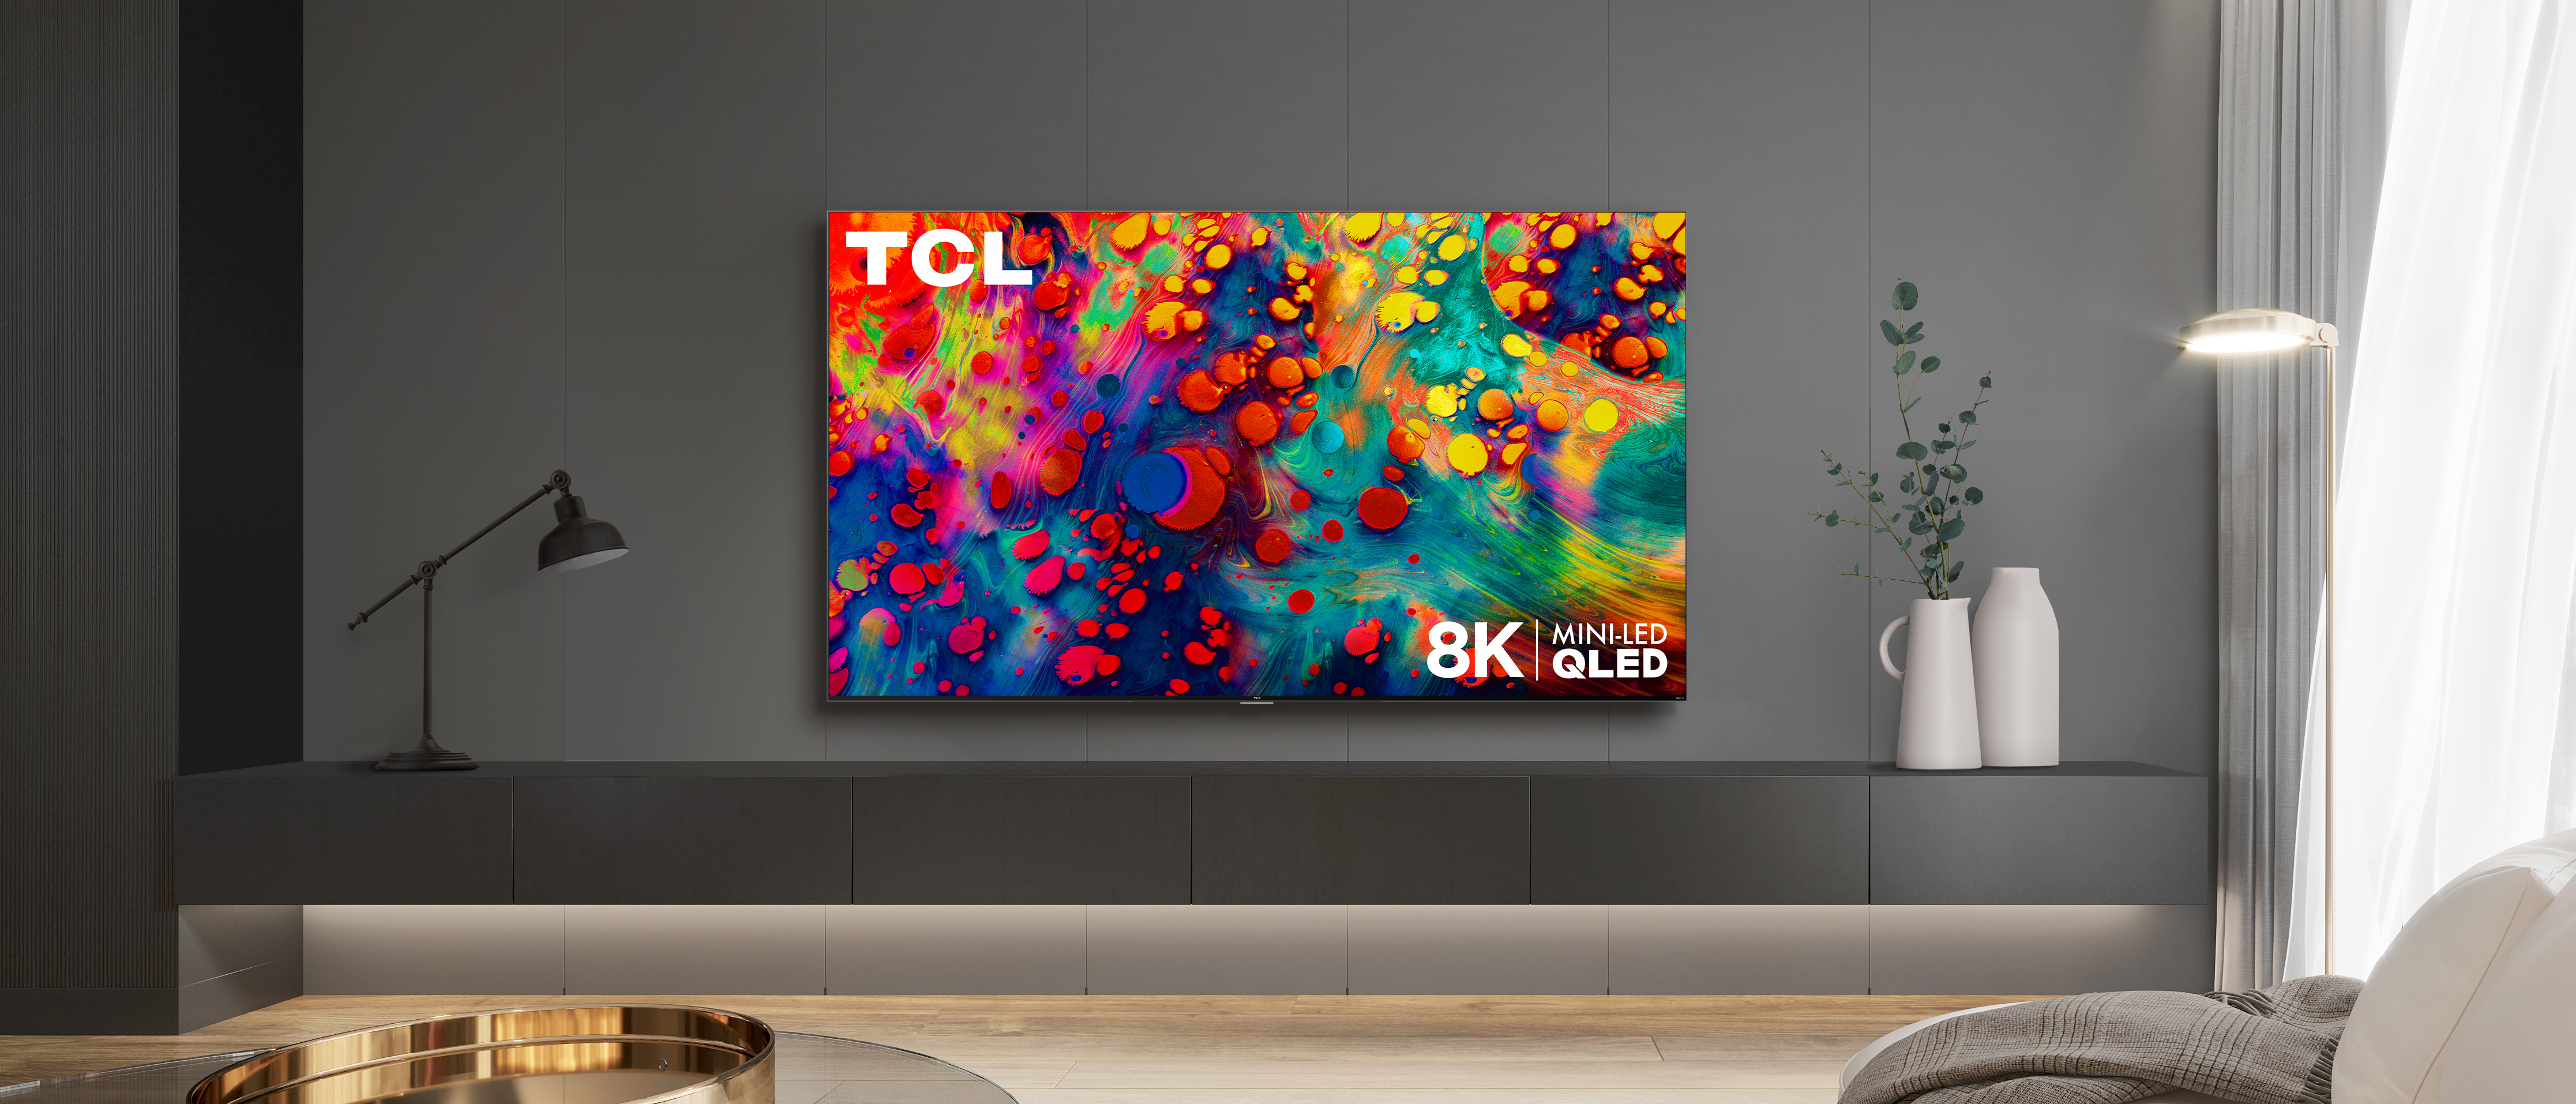 Телевизор qled tcl 50c647. TCL Mini-led TV. TCL QLED. Телевизор ТСЛ мини лед.